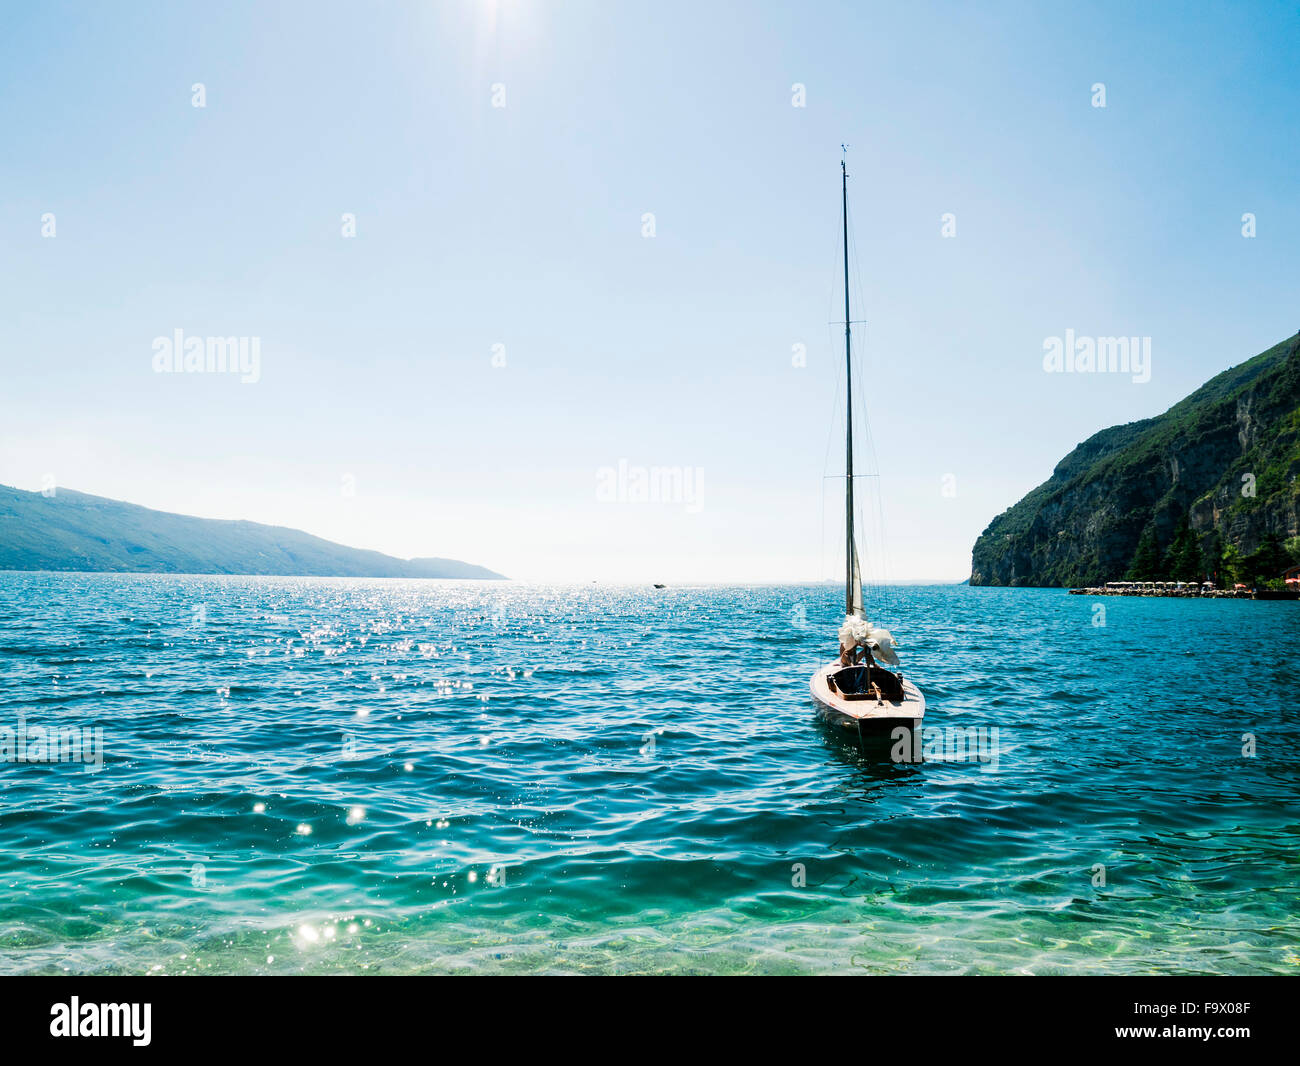 Italy, Lake Garda, Sailing boat at Porto di Tignale Stock Photo